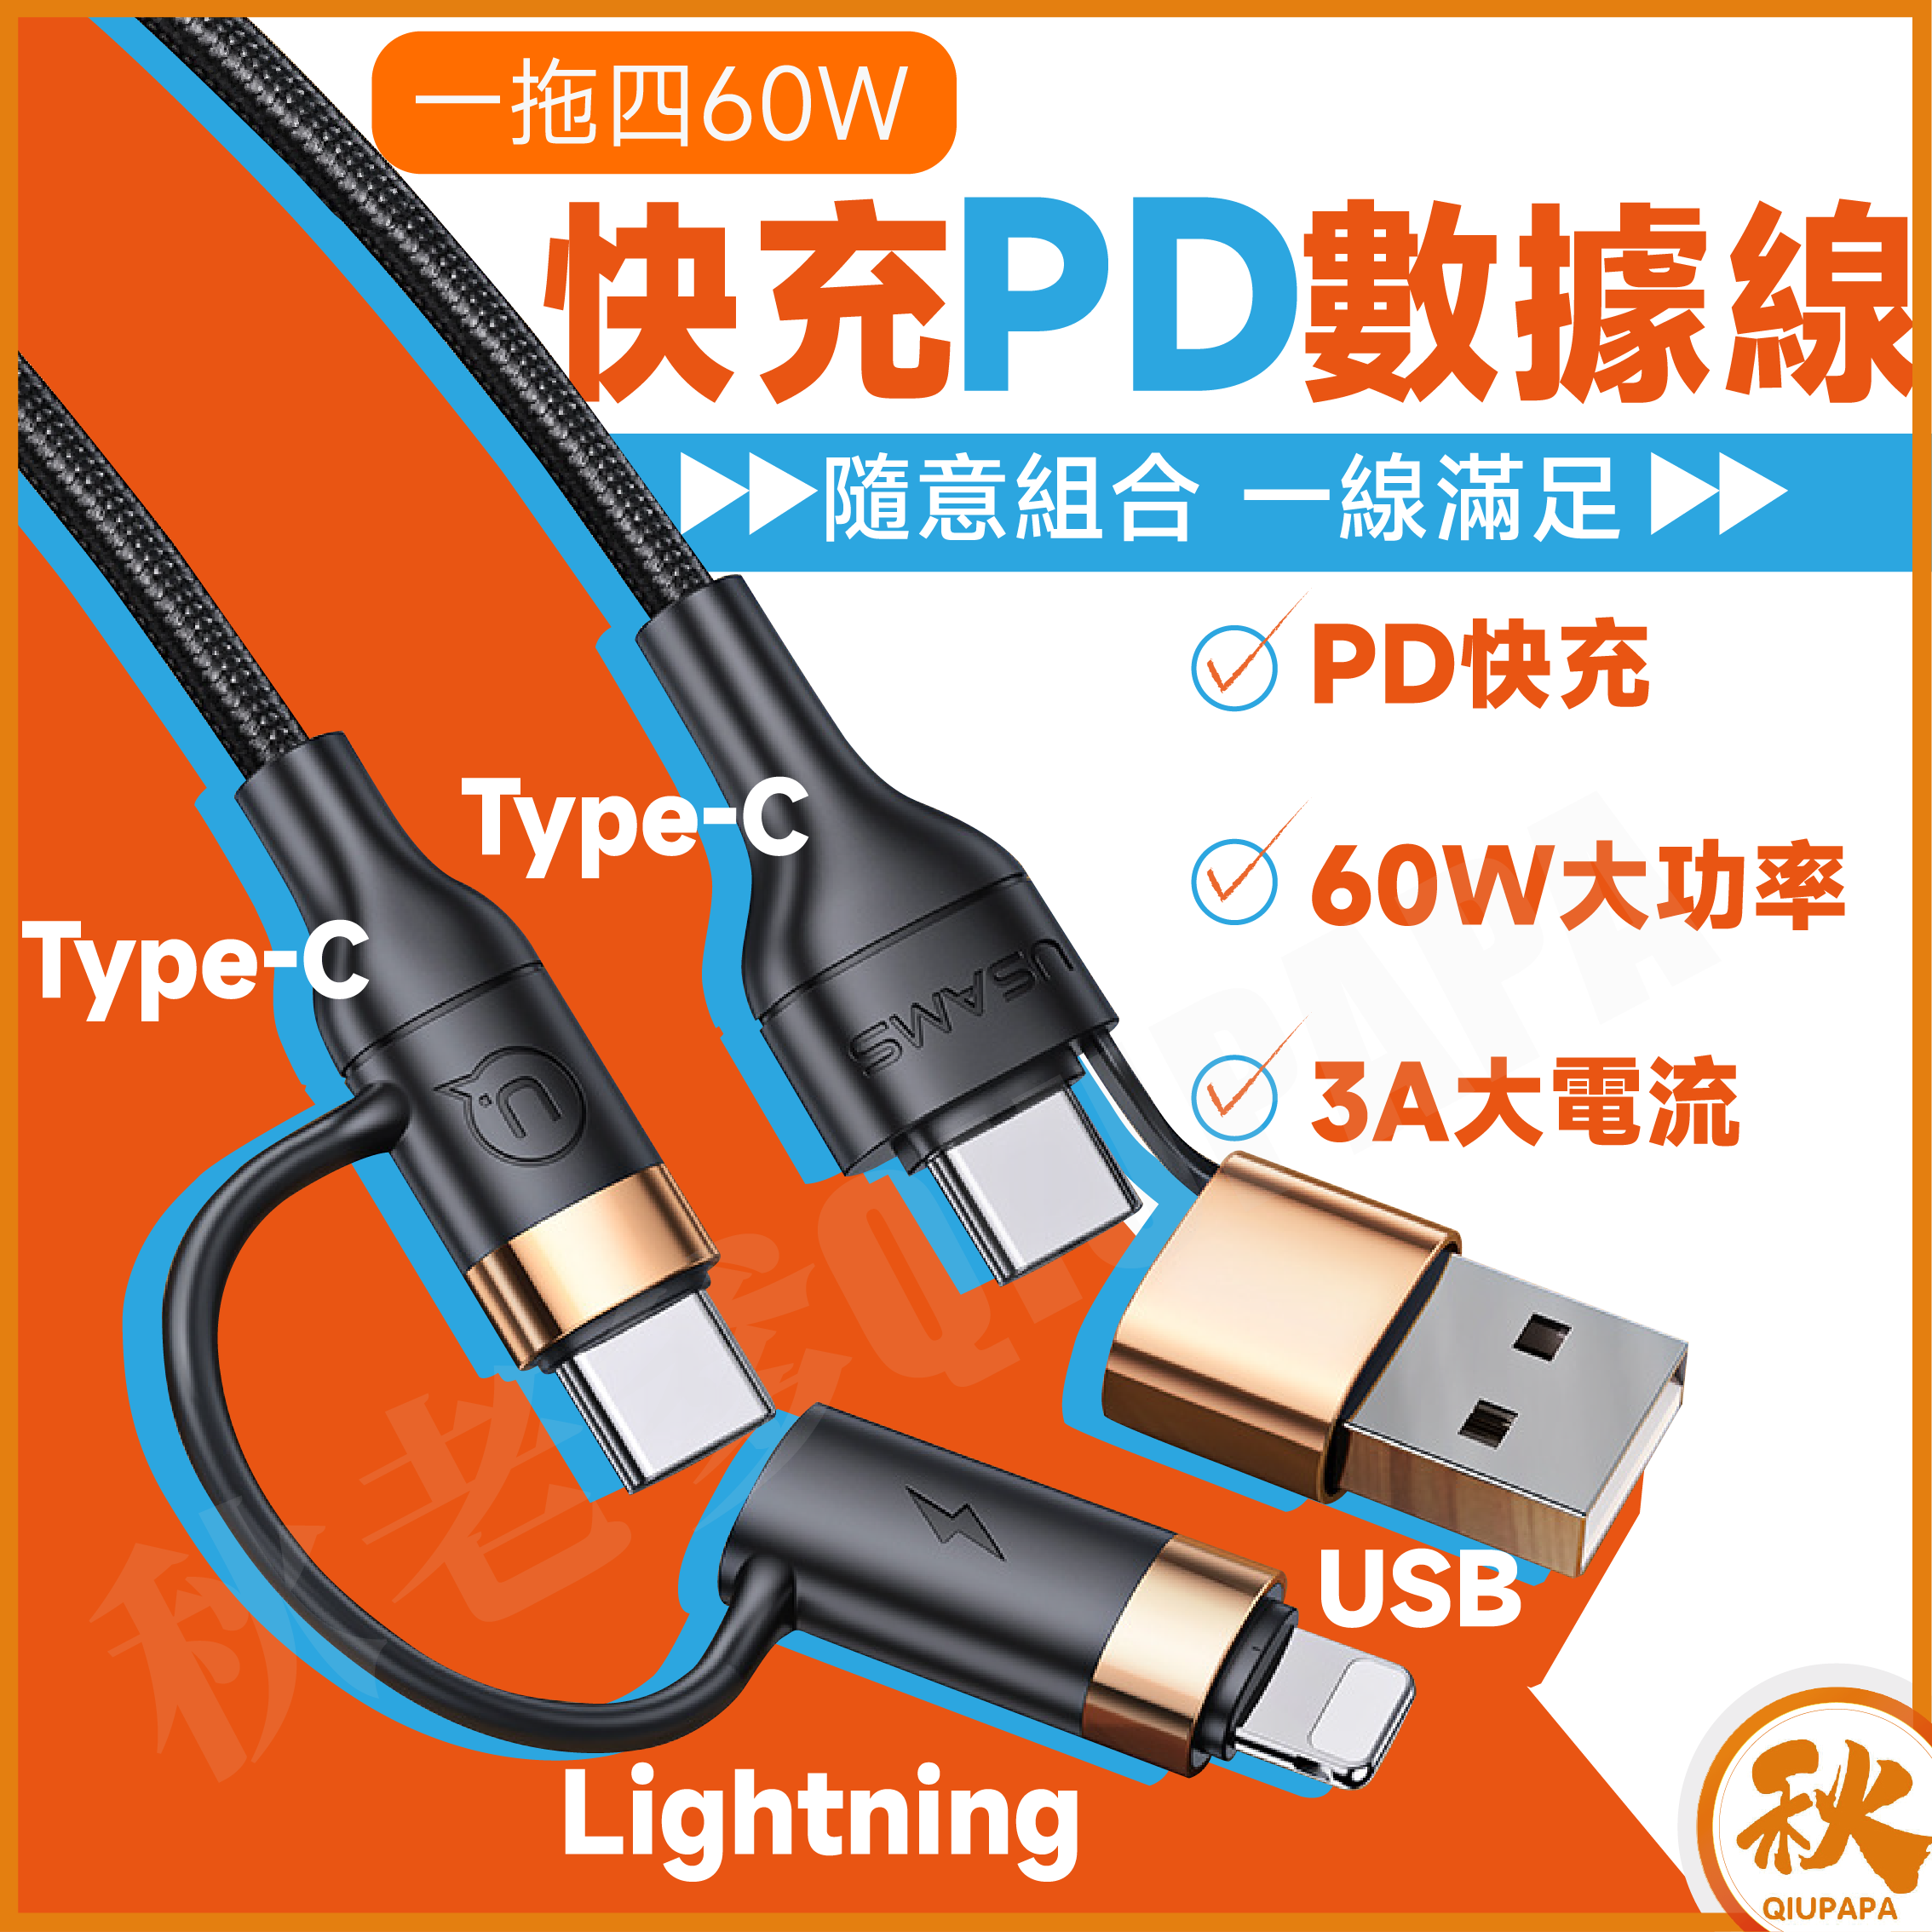 四合一轉接PD快充充電線 60W Type-C USB適用iPhone iPad 三星 華為 小米 OPPO